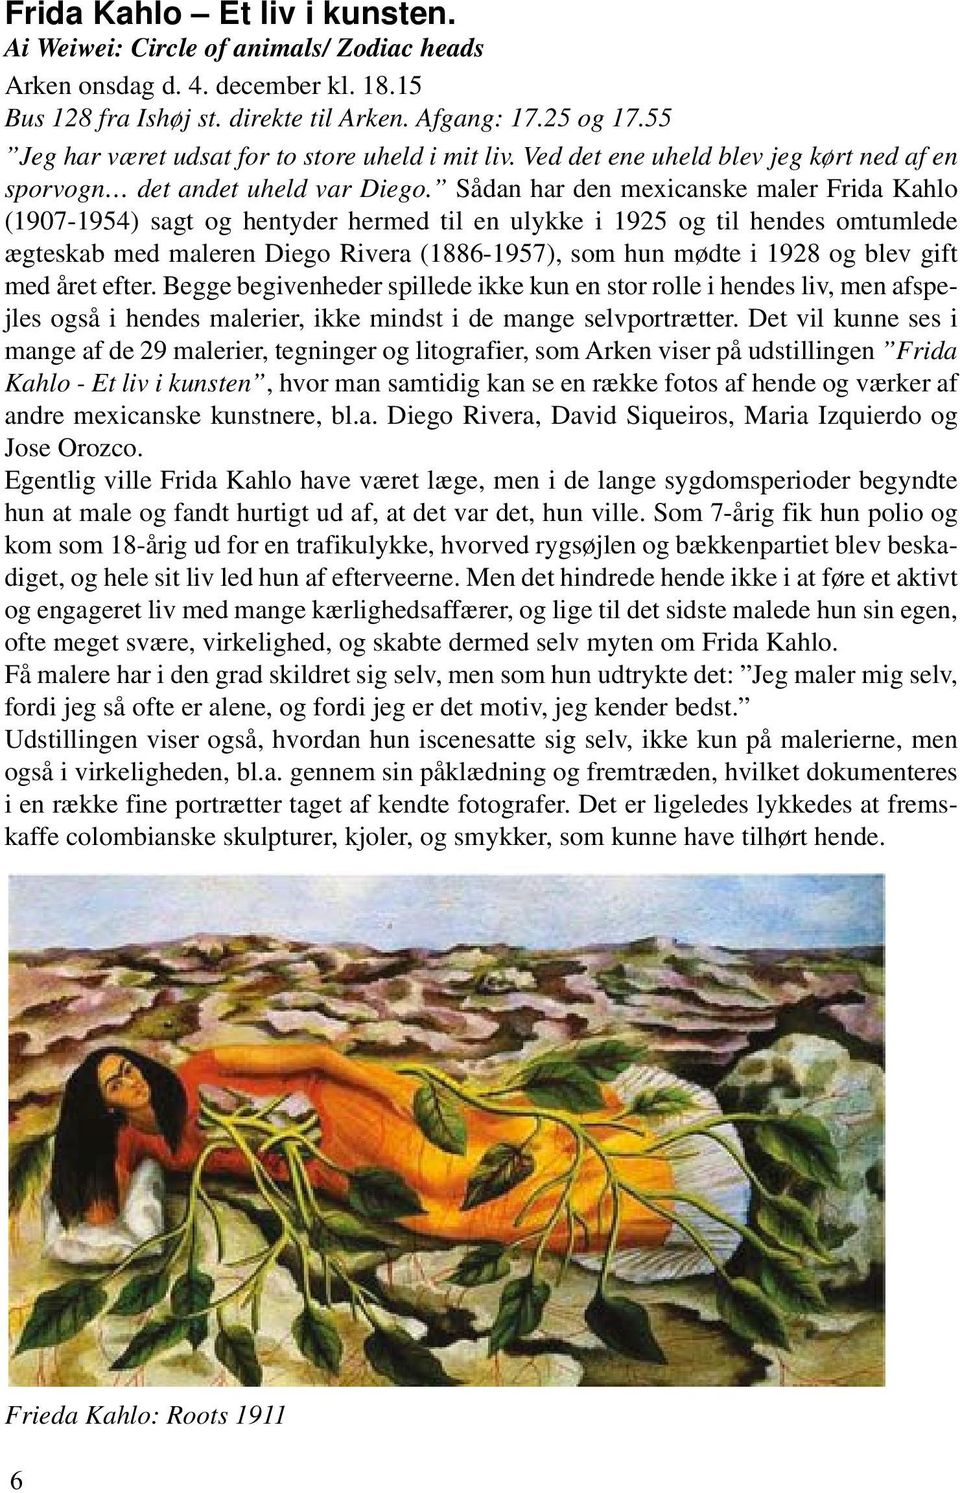 Sådan har den mexicanske maler Frida Kahlo (1907-1954) sagt og hentyder hermed til en ulykke i 1925 og til hendes omtumlede ægteskab med maleren Diego Rivera (1886-1957), som hun mødte i 1928 og blev